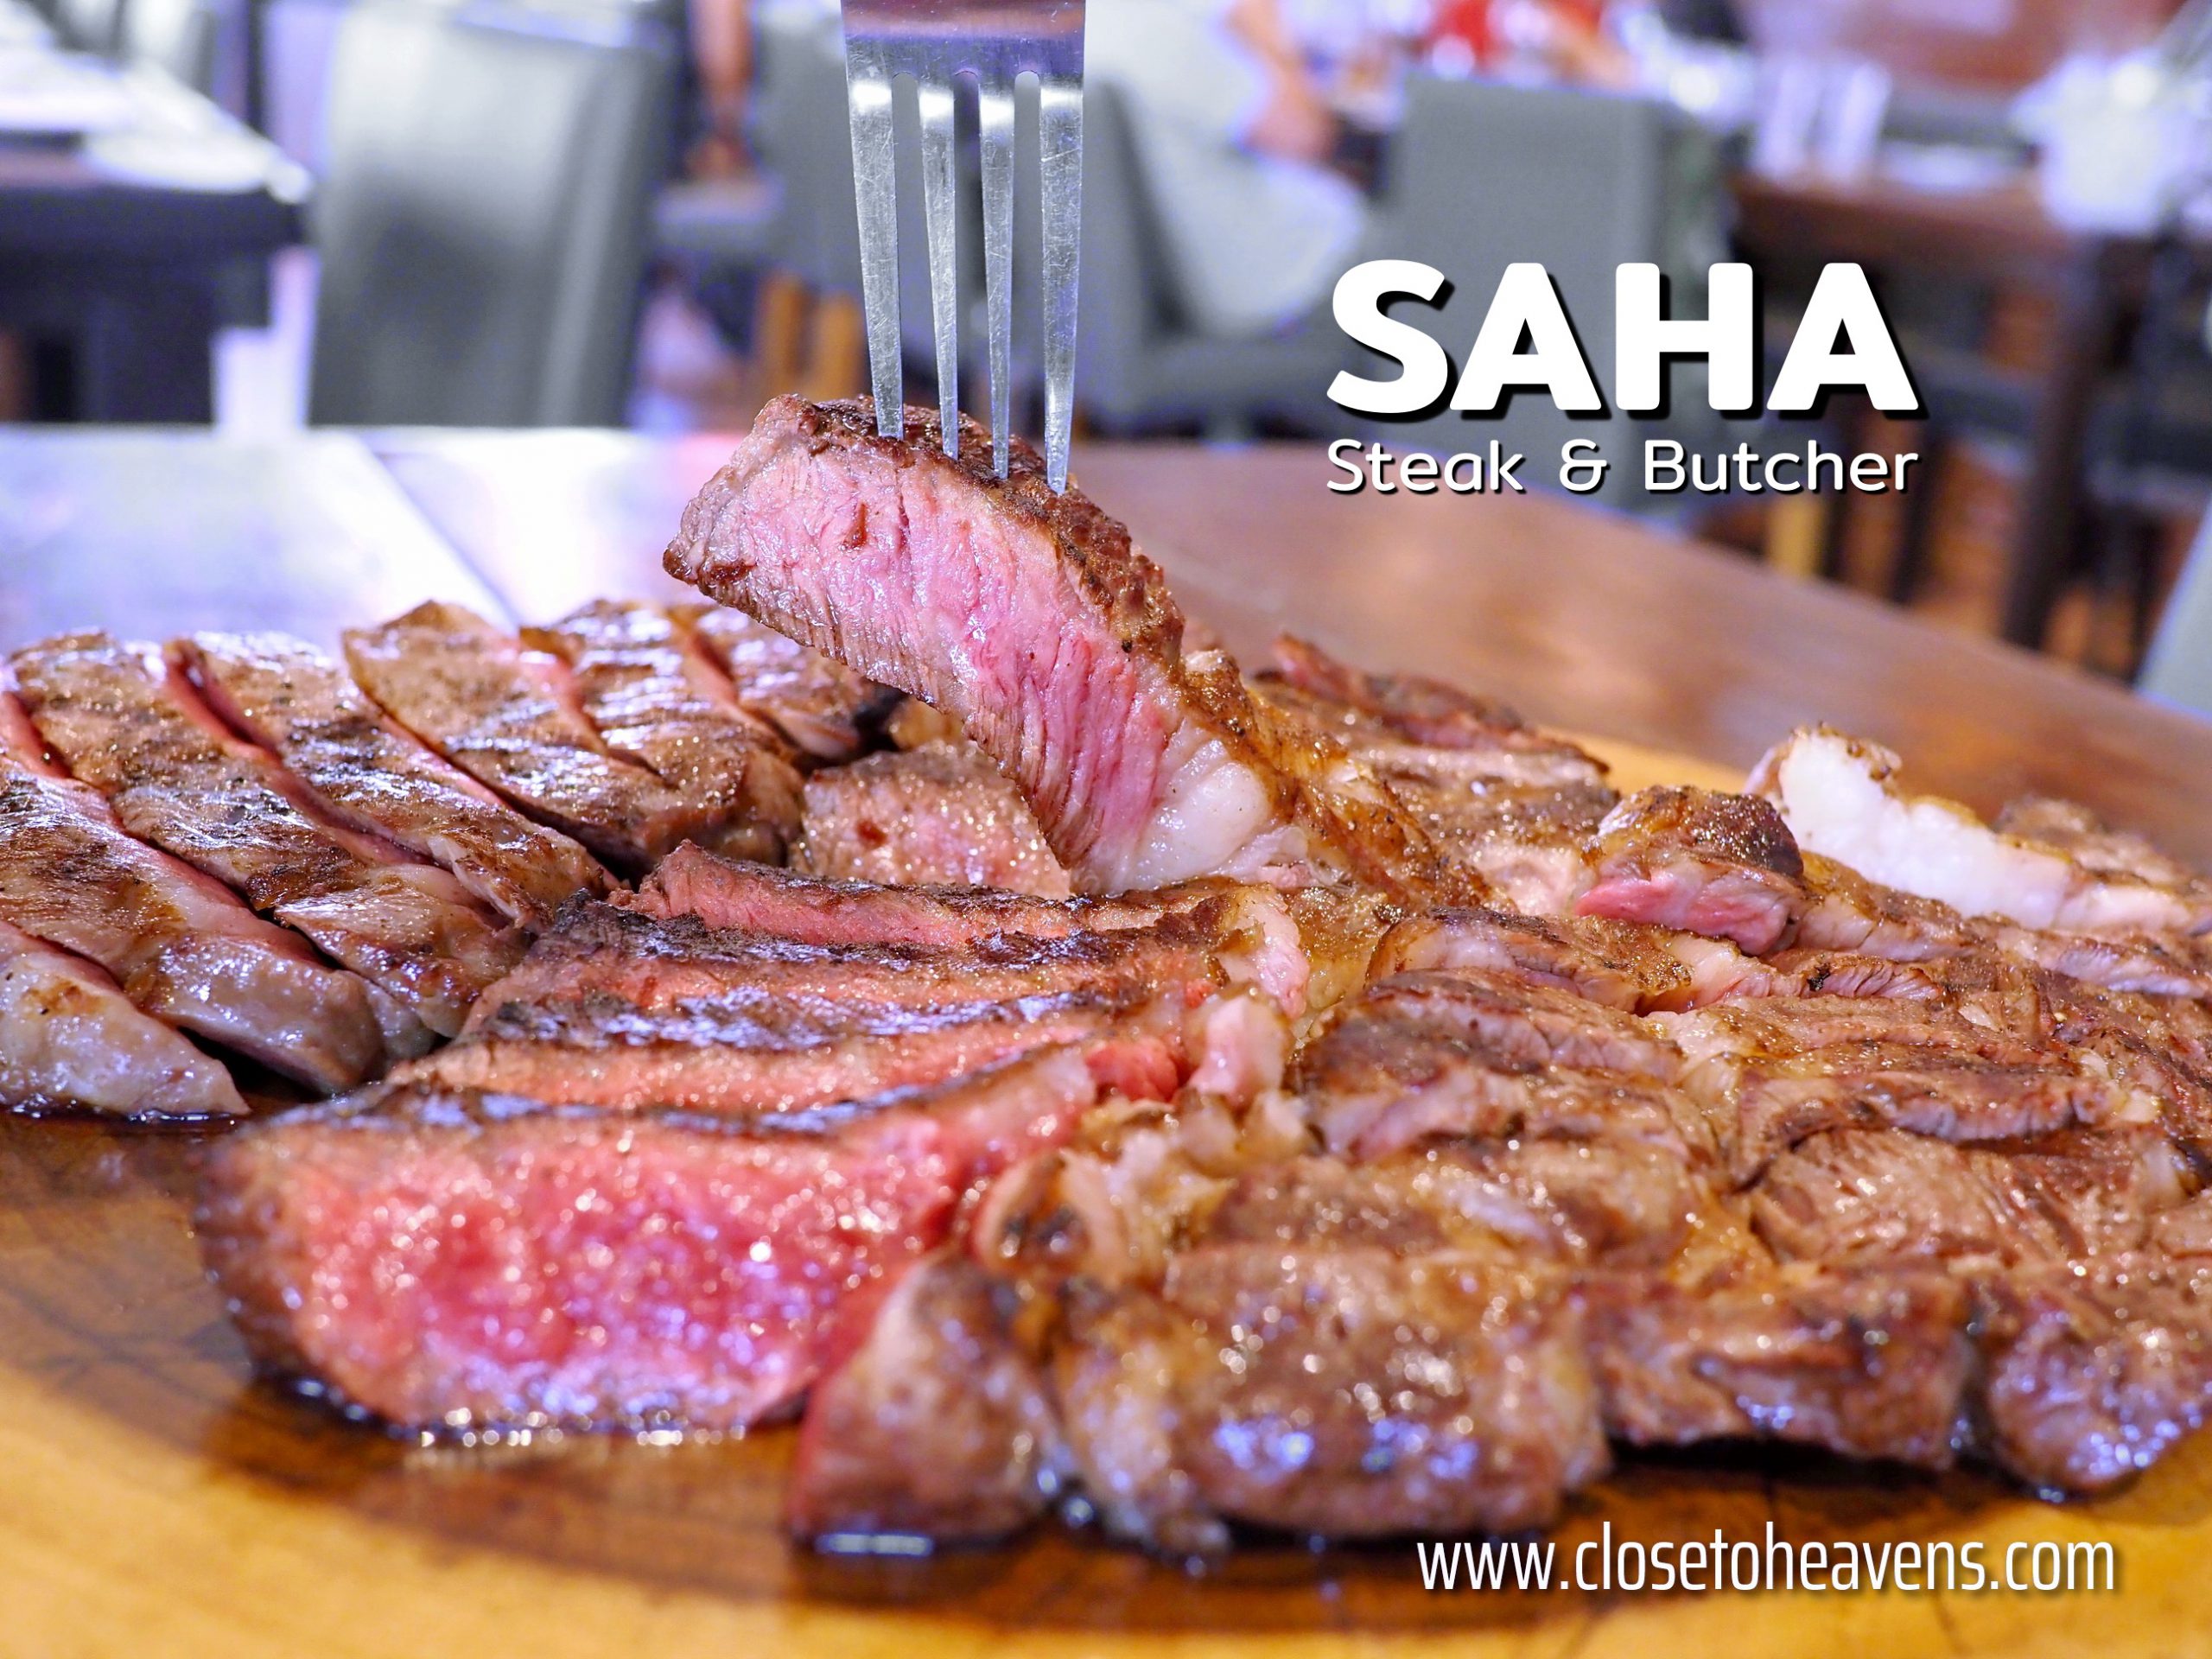 SAHA Steak & Butcher เนื้อไทยคุณภาพดี ราคาไม่แพง